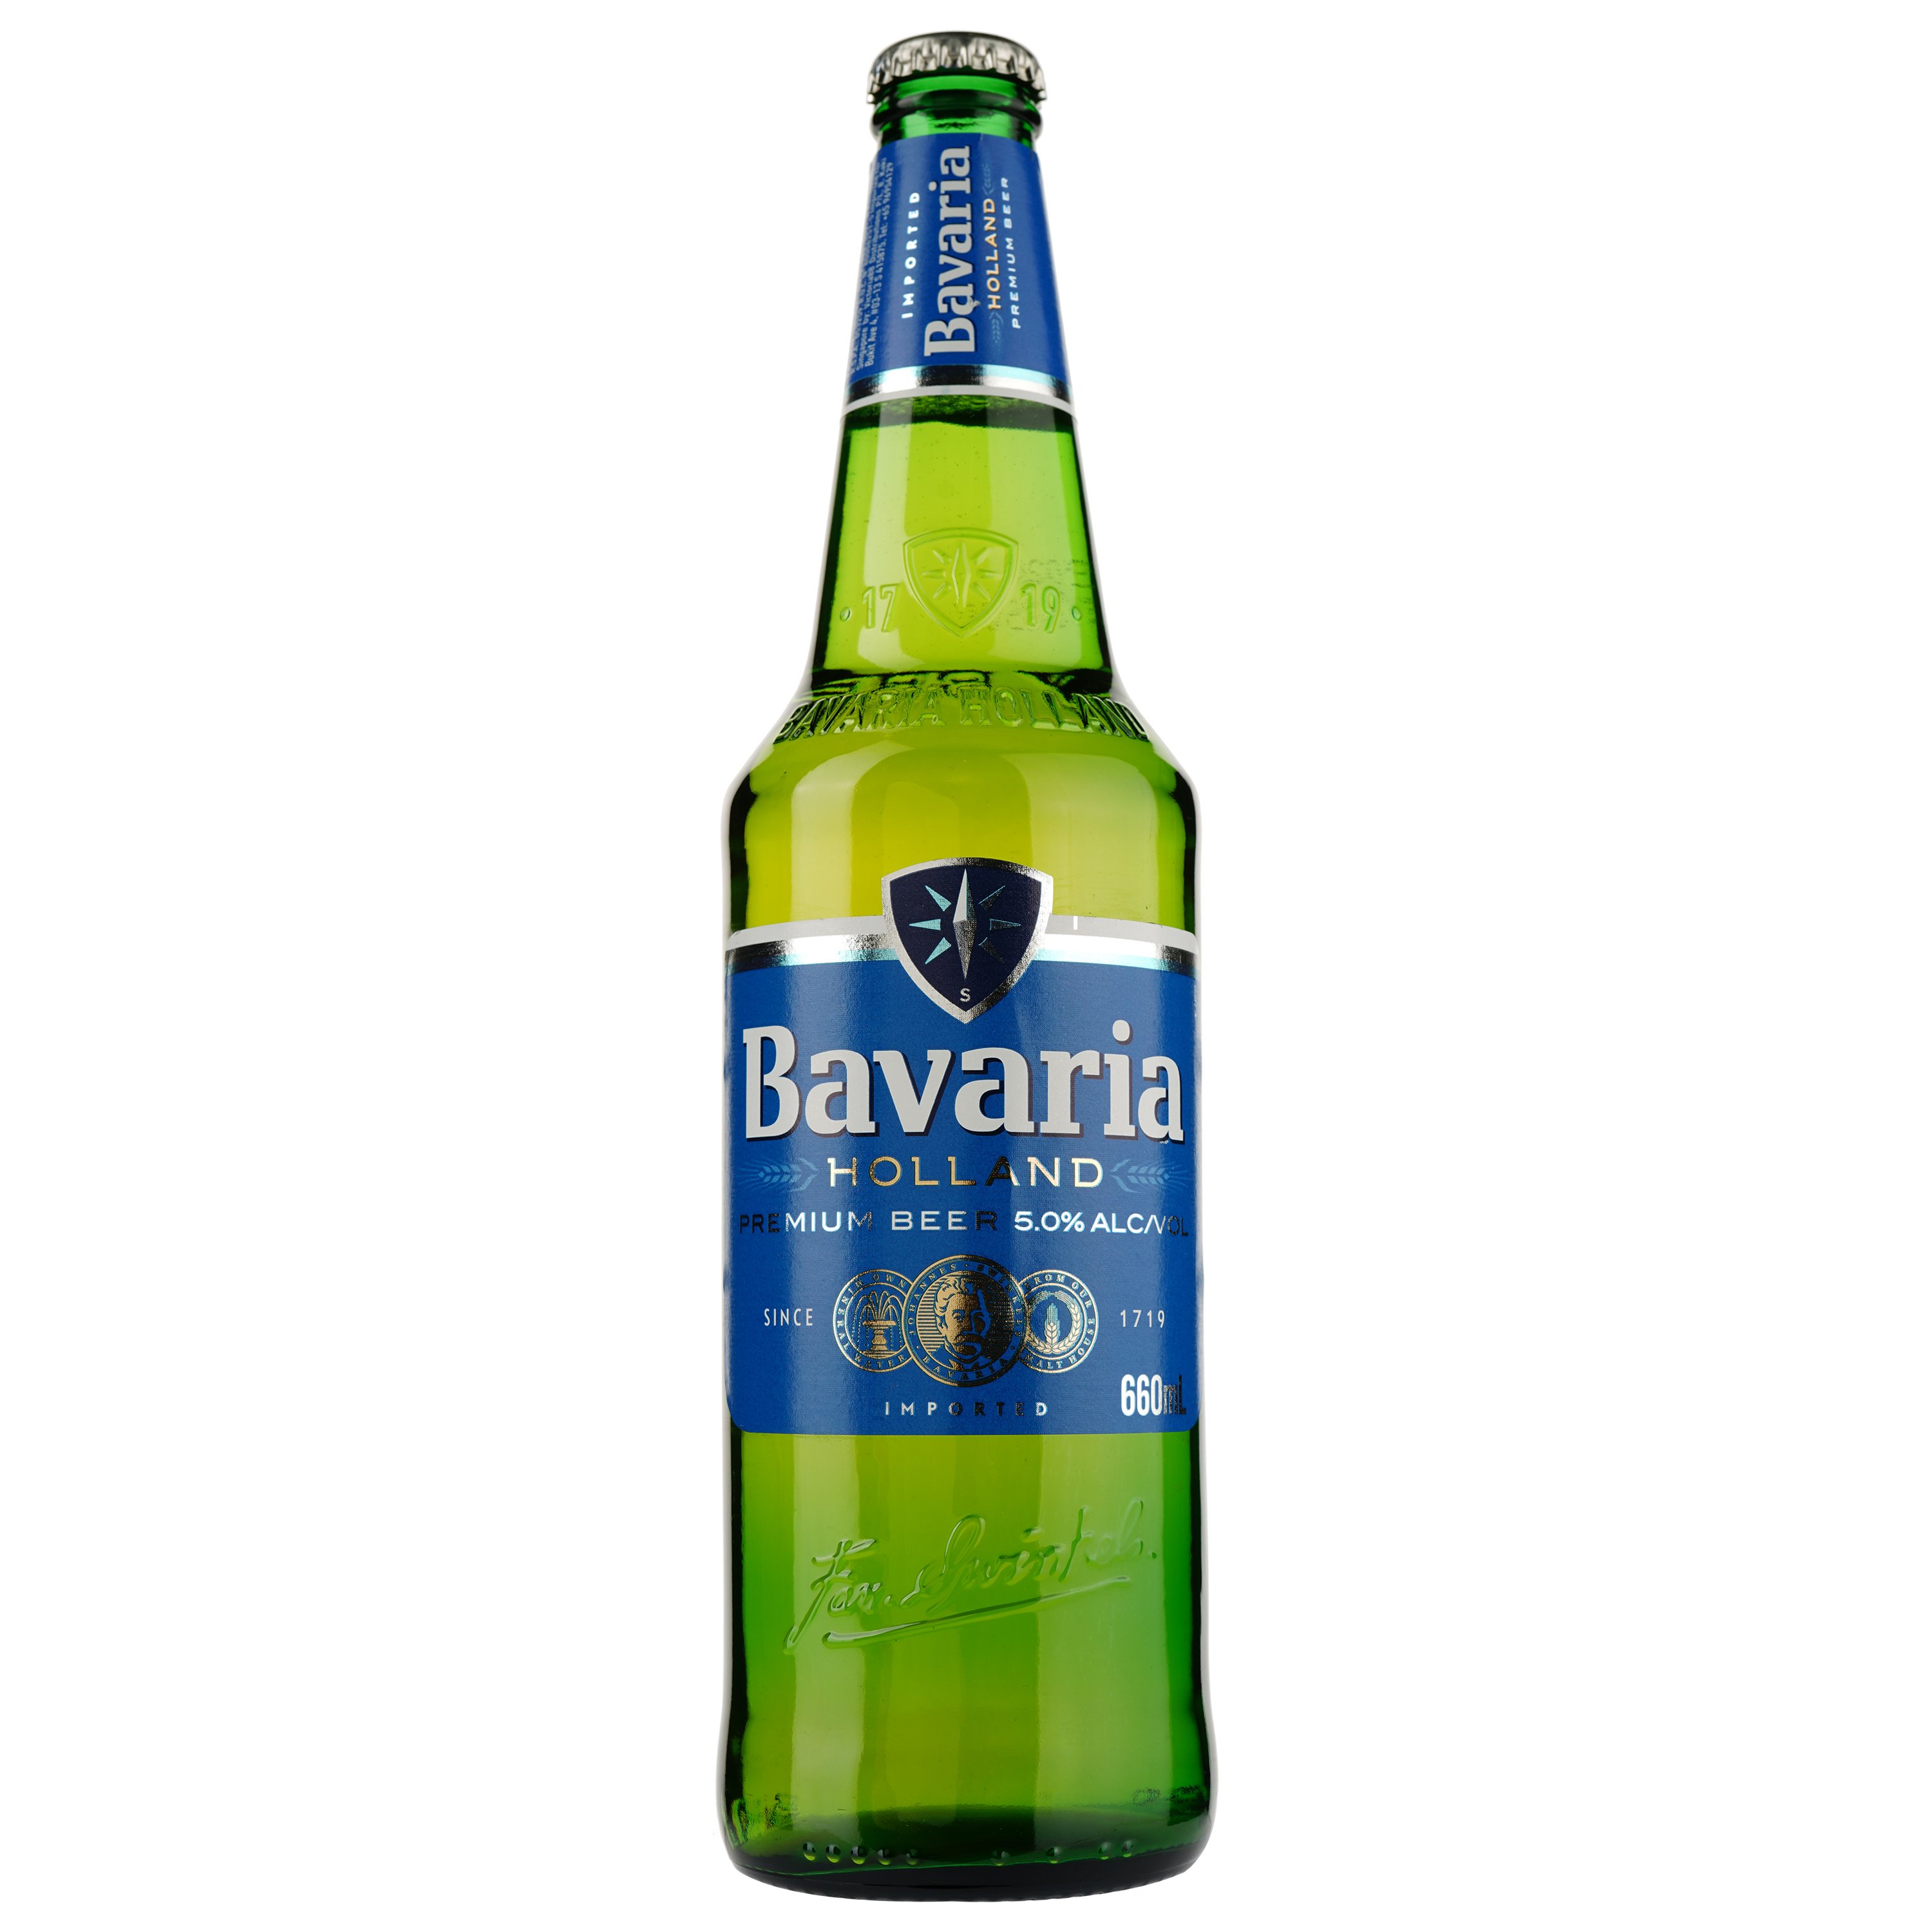 Пиво Bavaria, светлое, фильтрованное, 5%, 0,66 л - фото 1